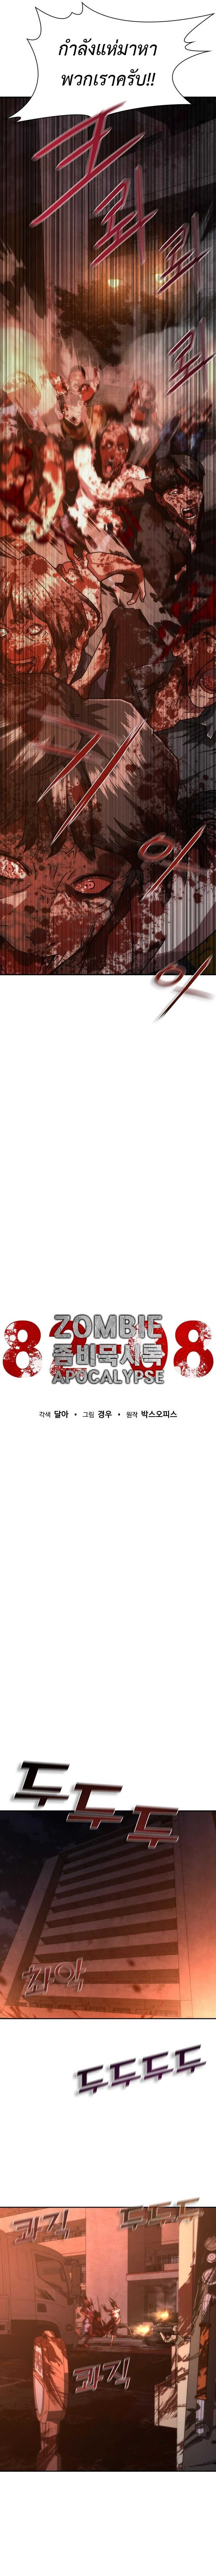 Zombie Apocalypse 17 04